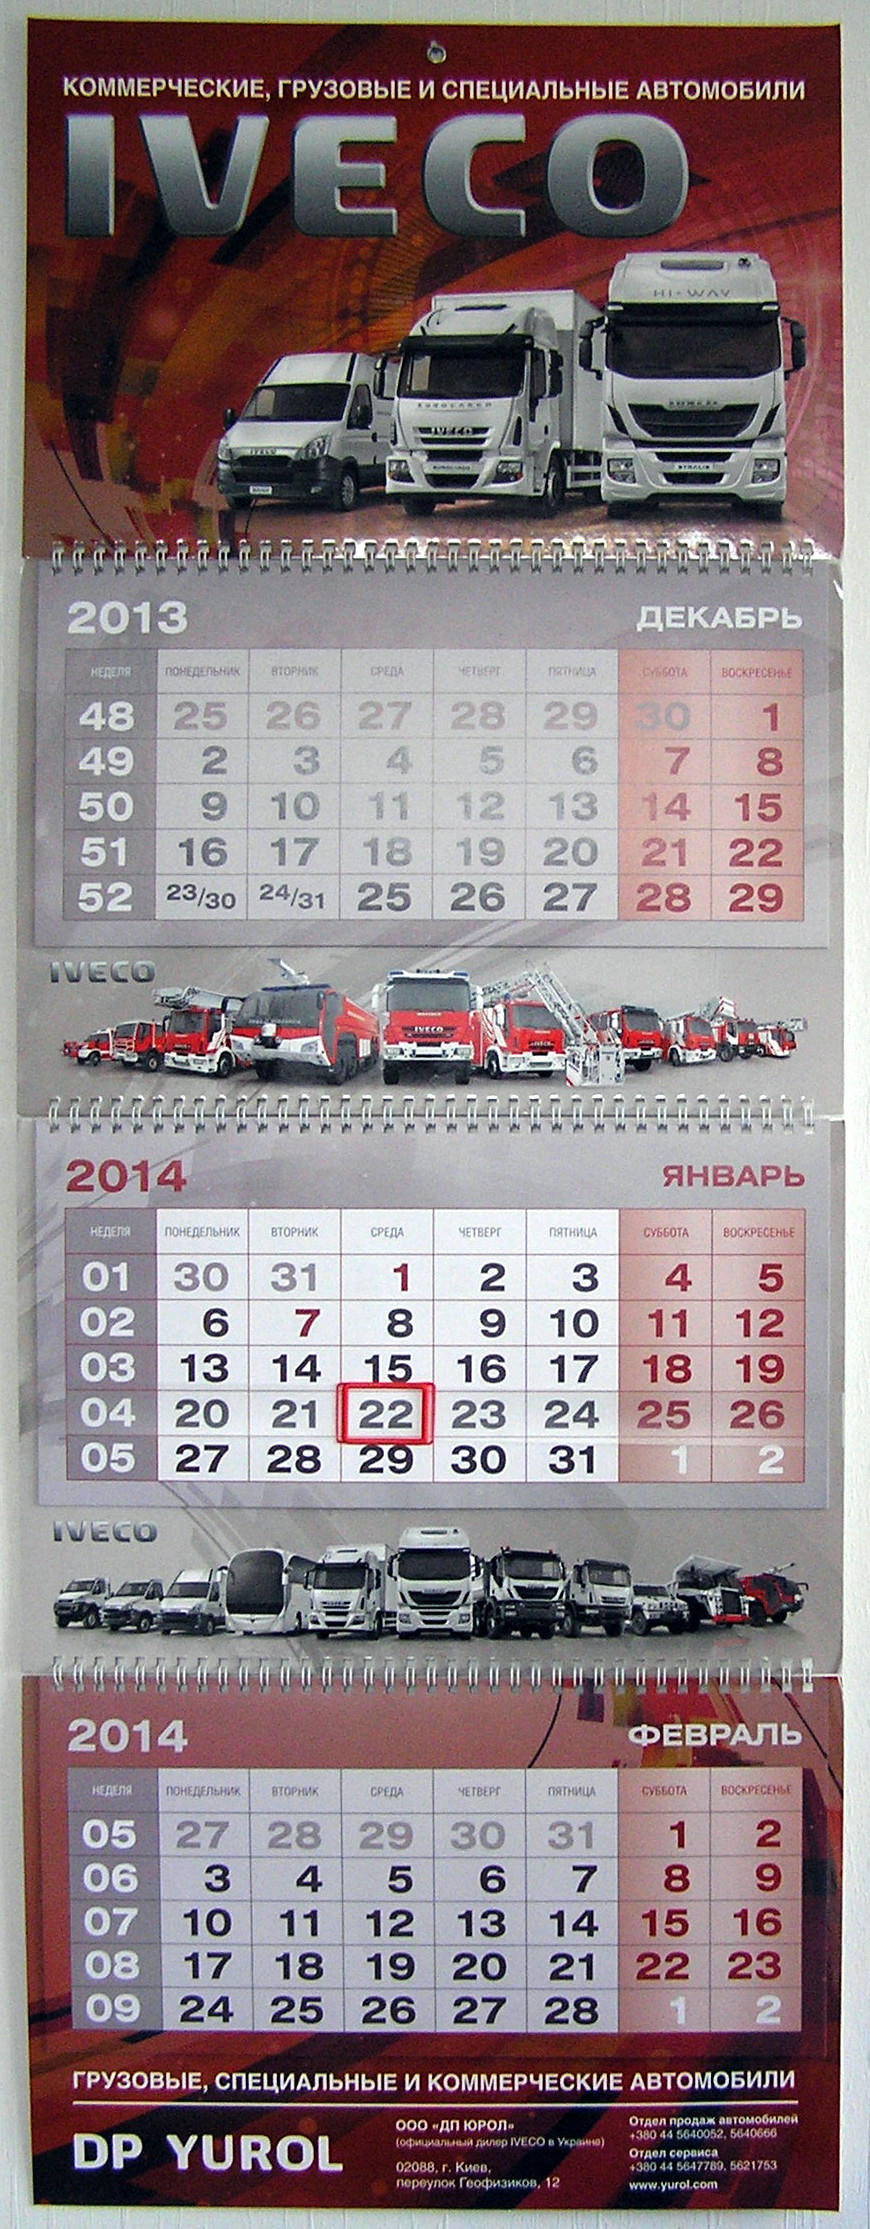 Печать квартальных календарей «Iveco». Полиграфия типографии Макрос, изготовление квартальных календарей, спецификация 966993-1